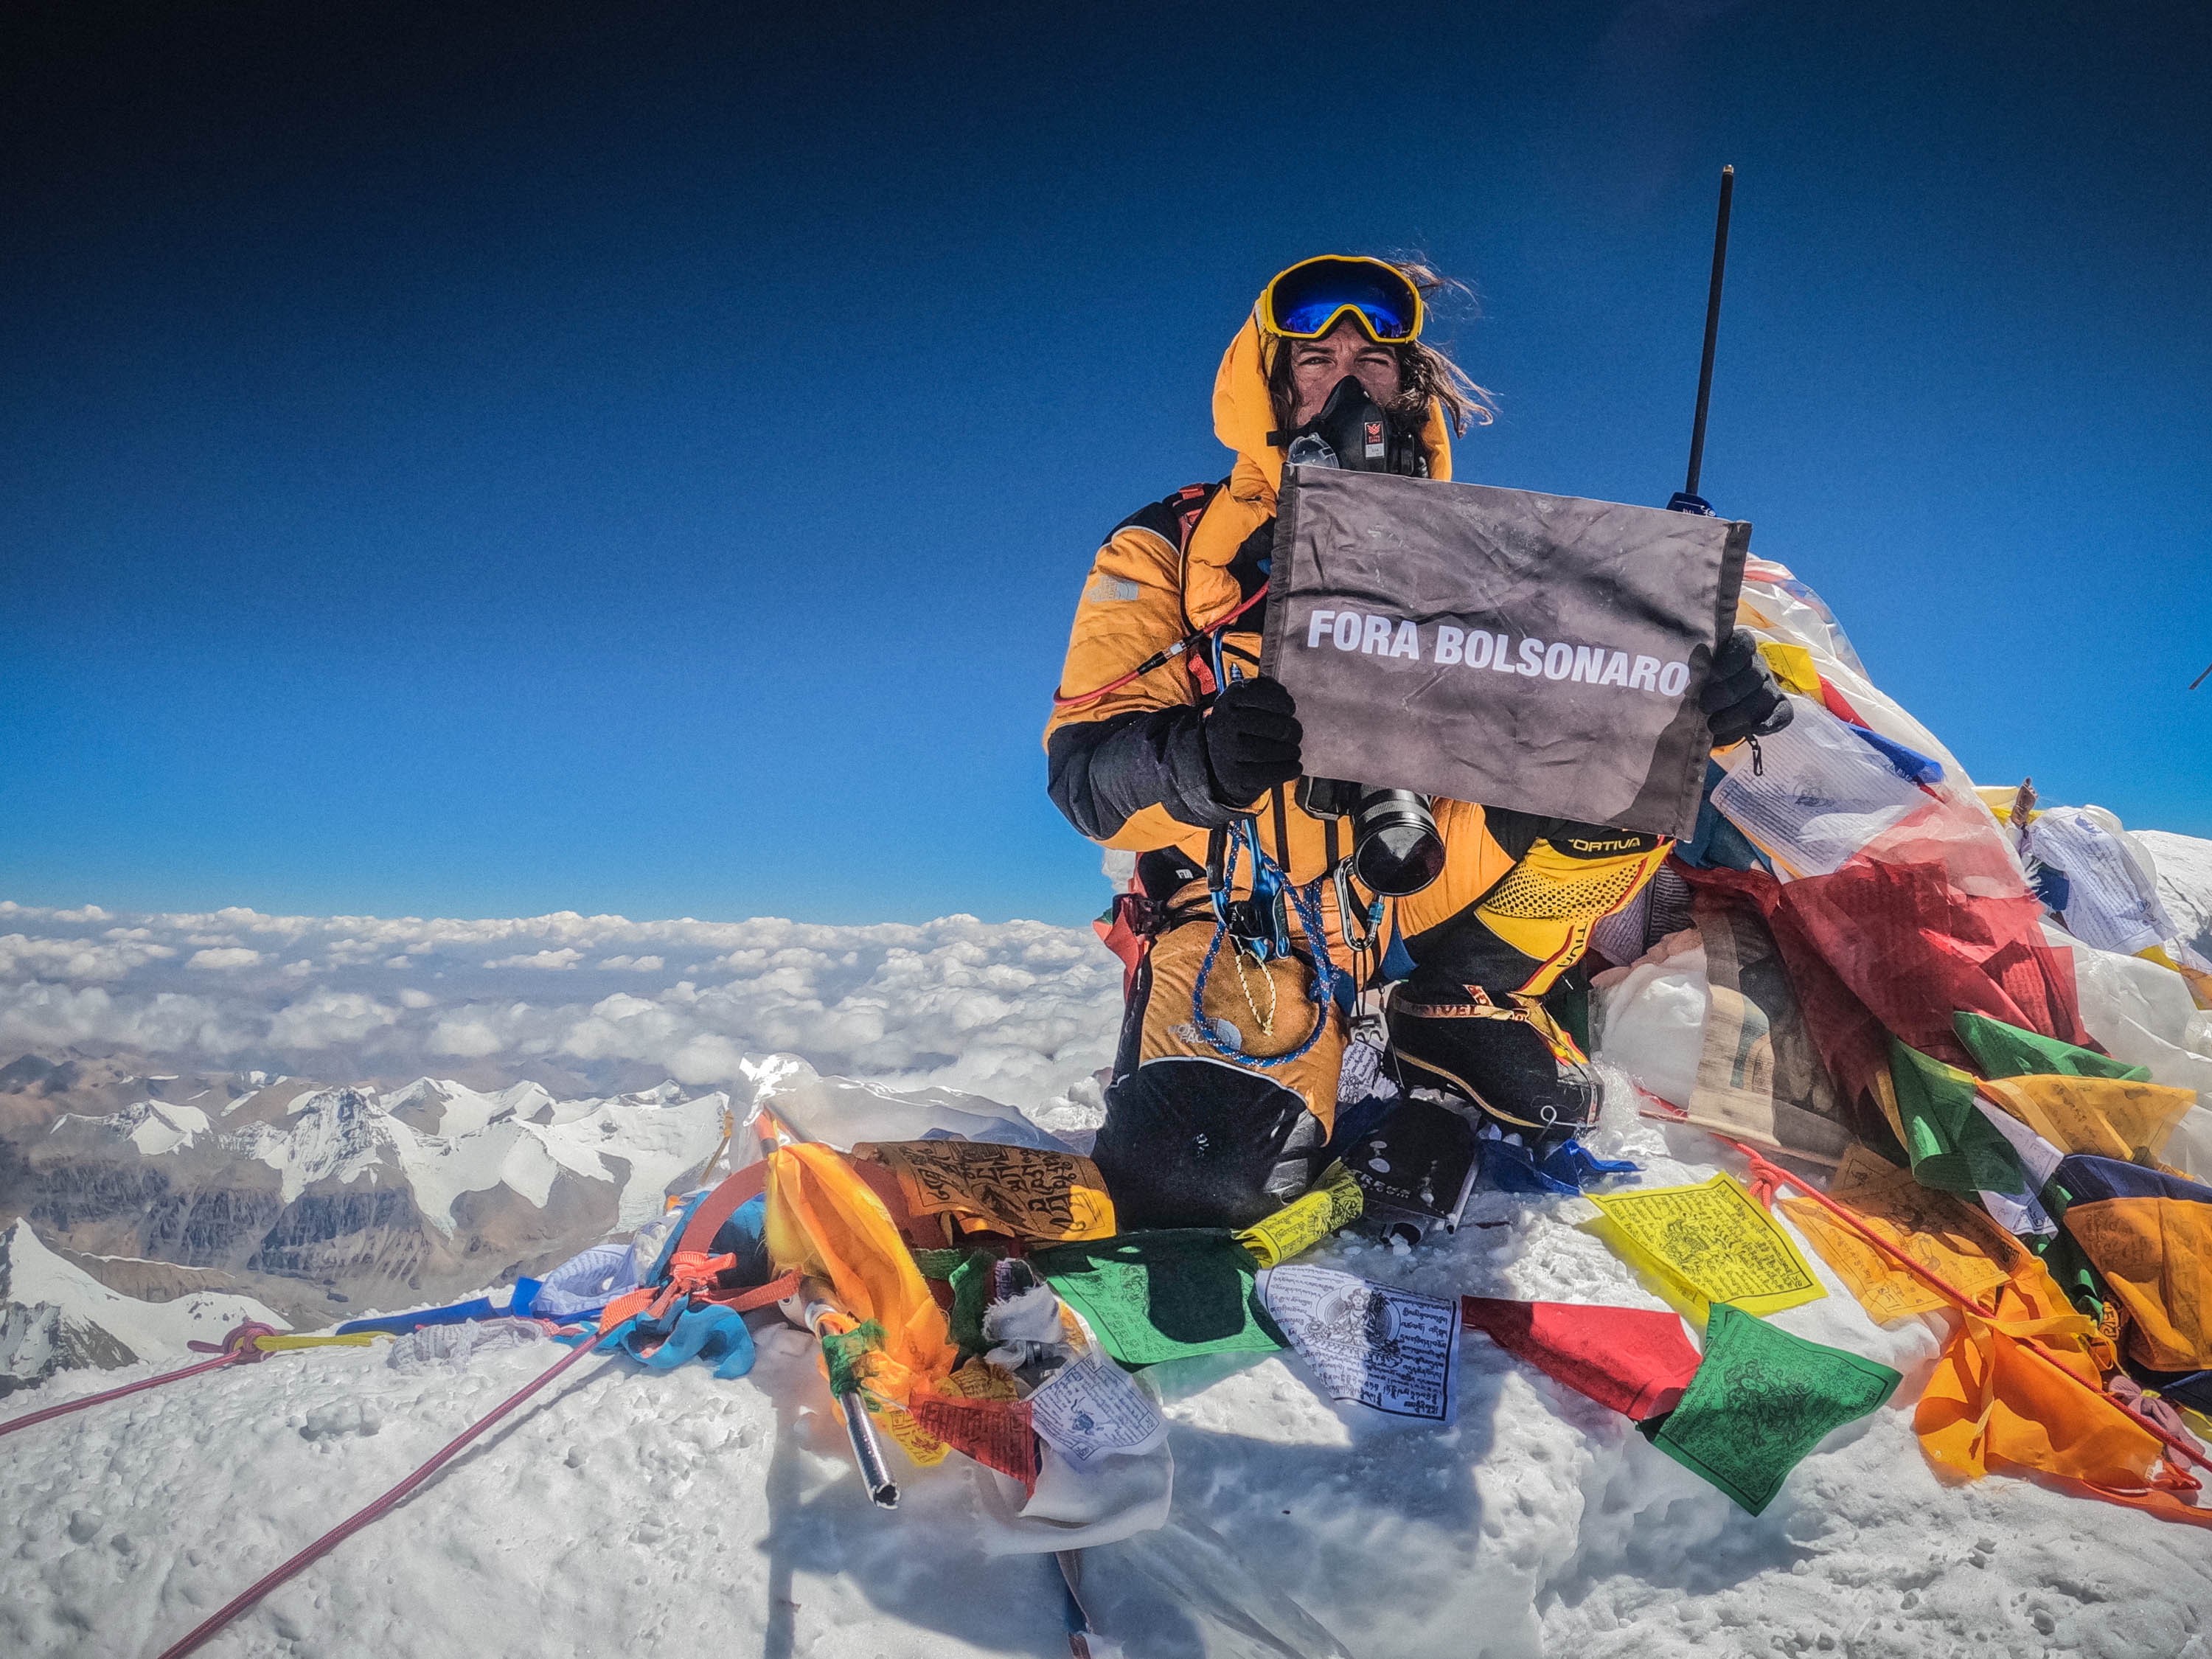 Fotógrafo brasileiro chega pela 2ª vez ao topo do Everest e viraliza com placa contra governo: 'Fora Bolsonaro'